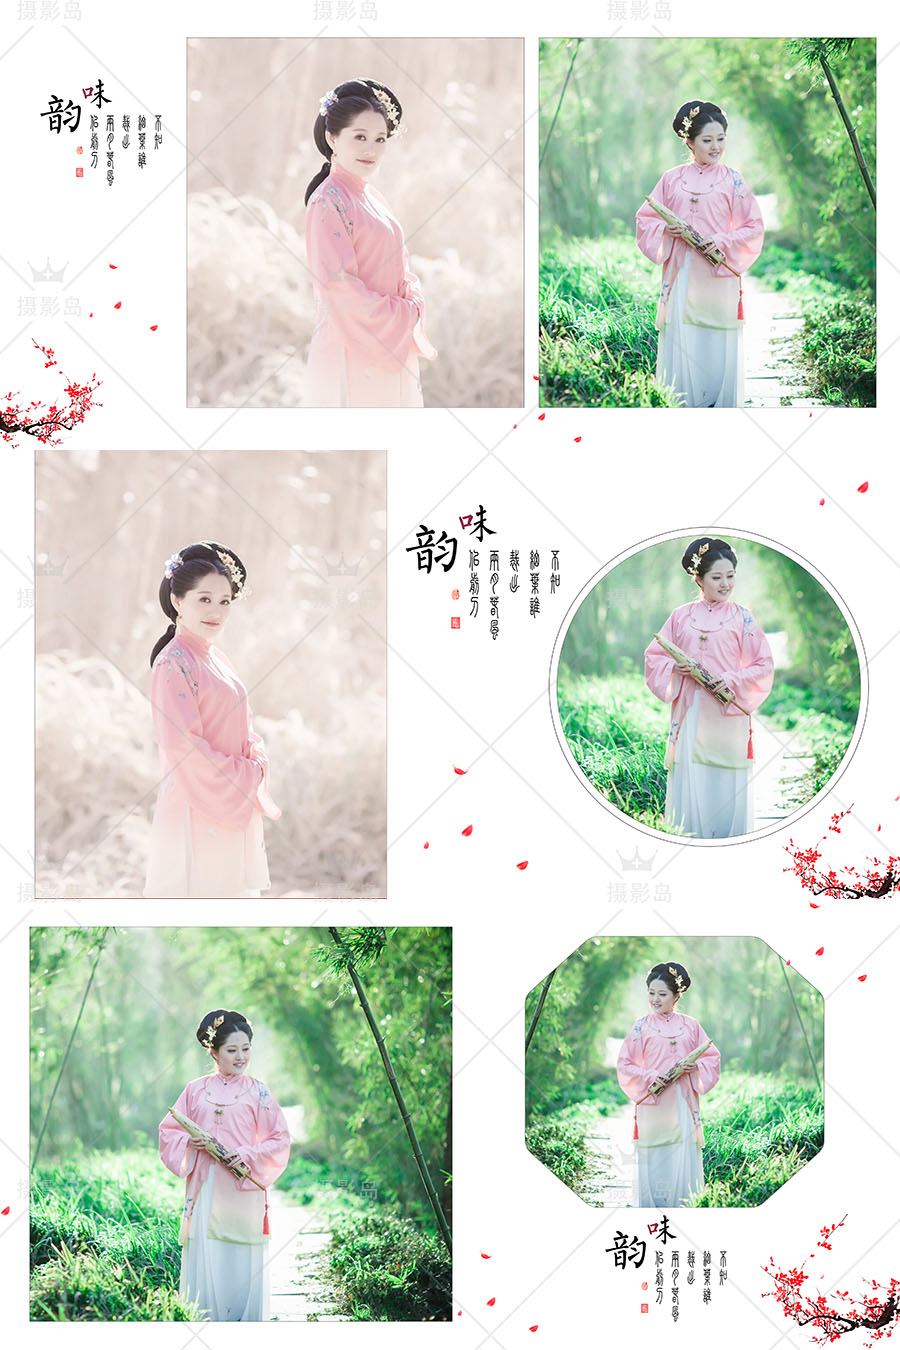 中国风工笔画古装婚纱摄影PSD相册模板，影楼情侣写真后期相册排版素材